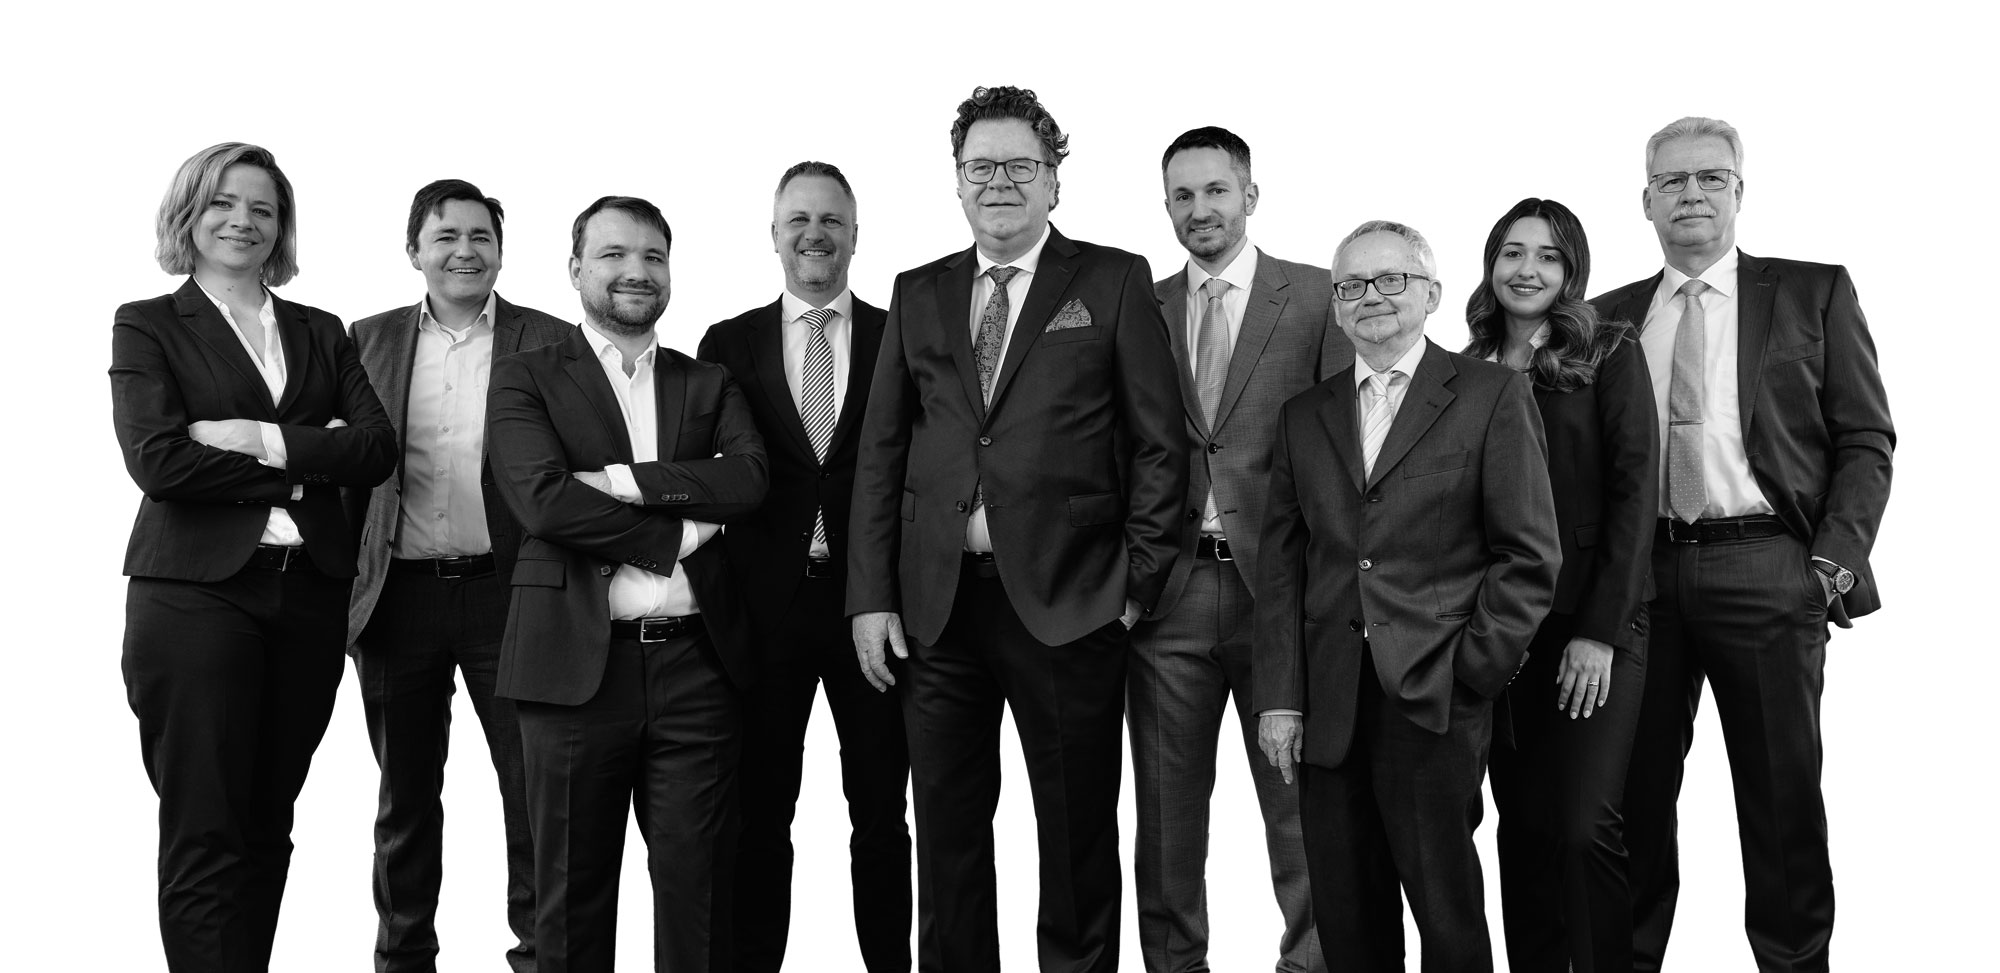 Die Anwälte von Klein & Partner mbB Rechtsanwälte – Kompetente Anwälte für viele Rechtsgebiete für die Region Böblingen, Sindelfingen und Stuttgart